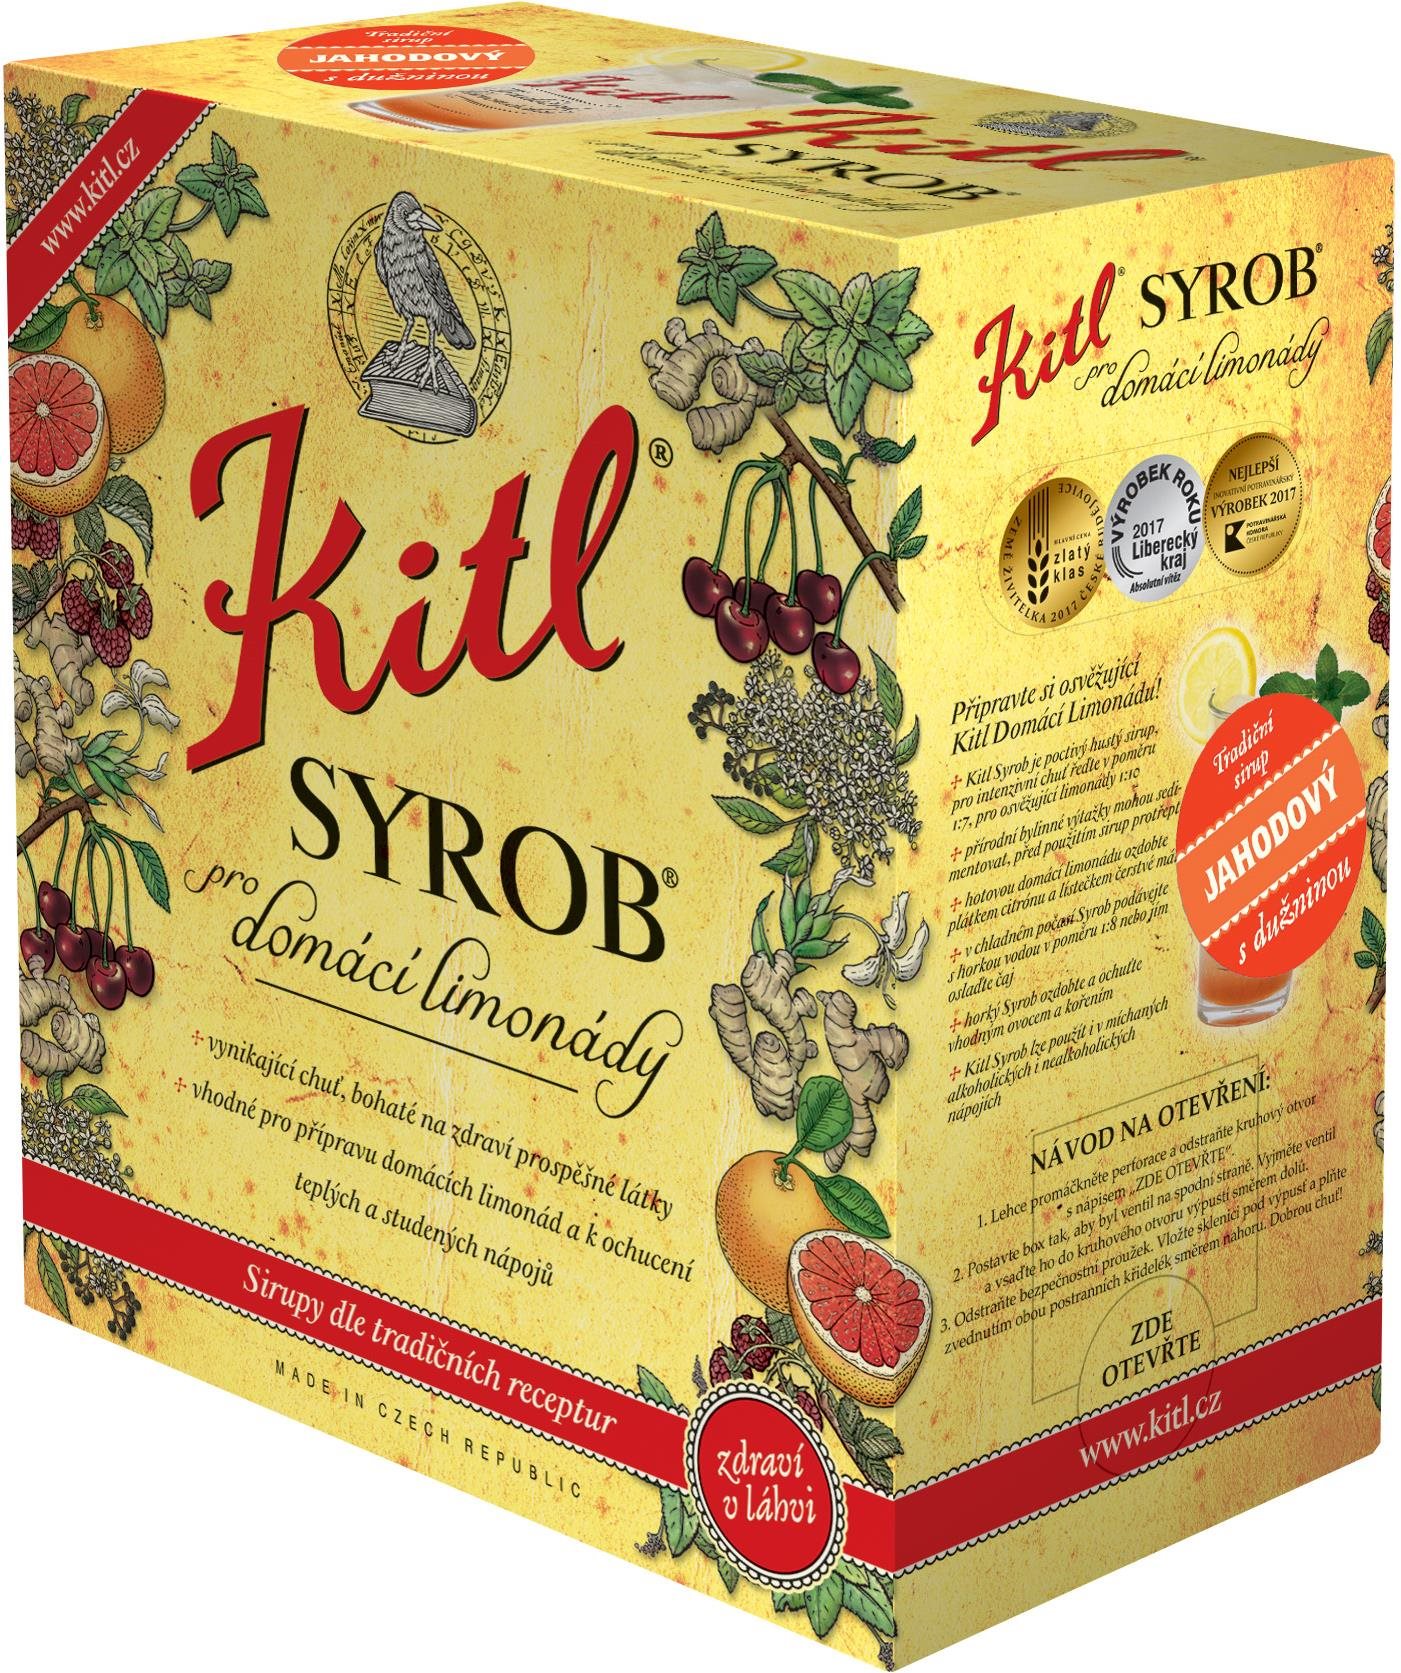 Kitl Syrob Eper 5 l bag-in-box